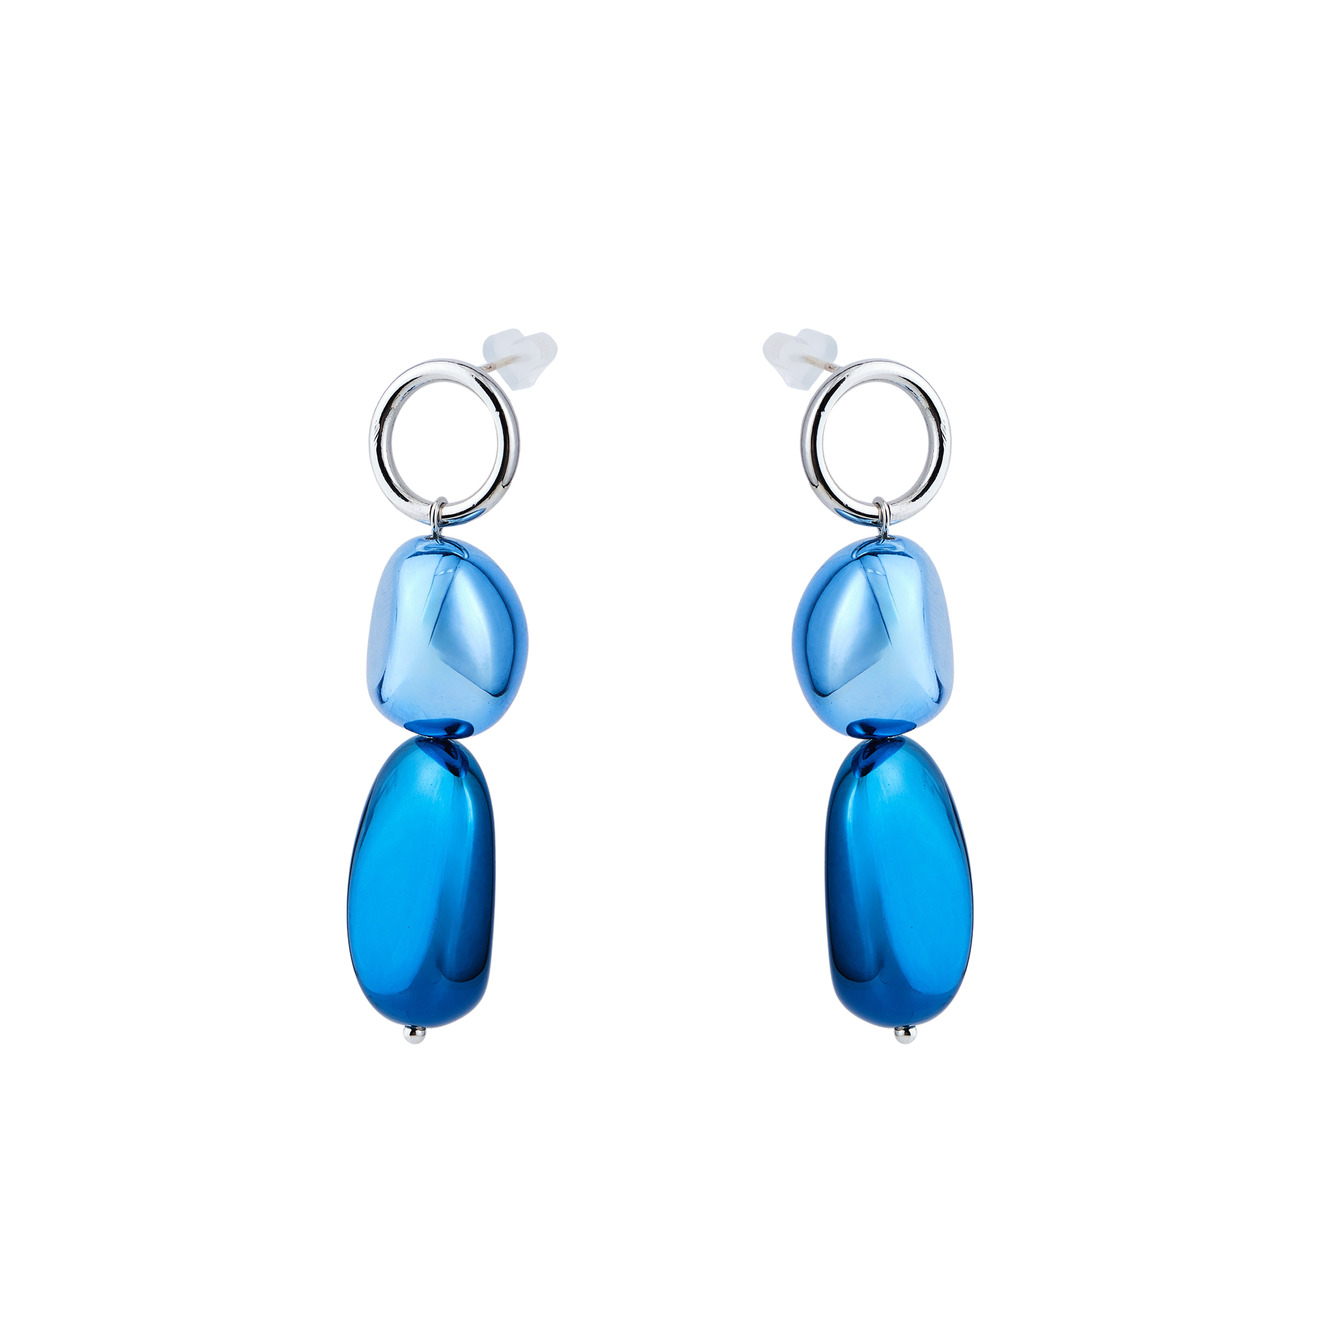 Free Form Jewelry Серебристые серьги с синим камнем free form jewelry золотистые серьги с фиолетовым камнем